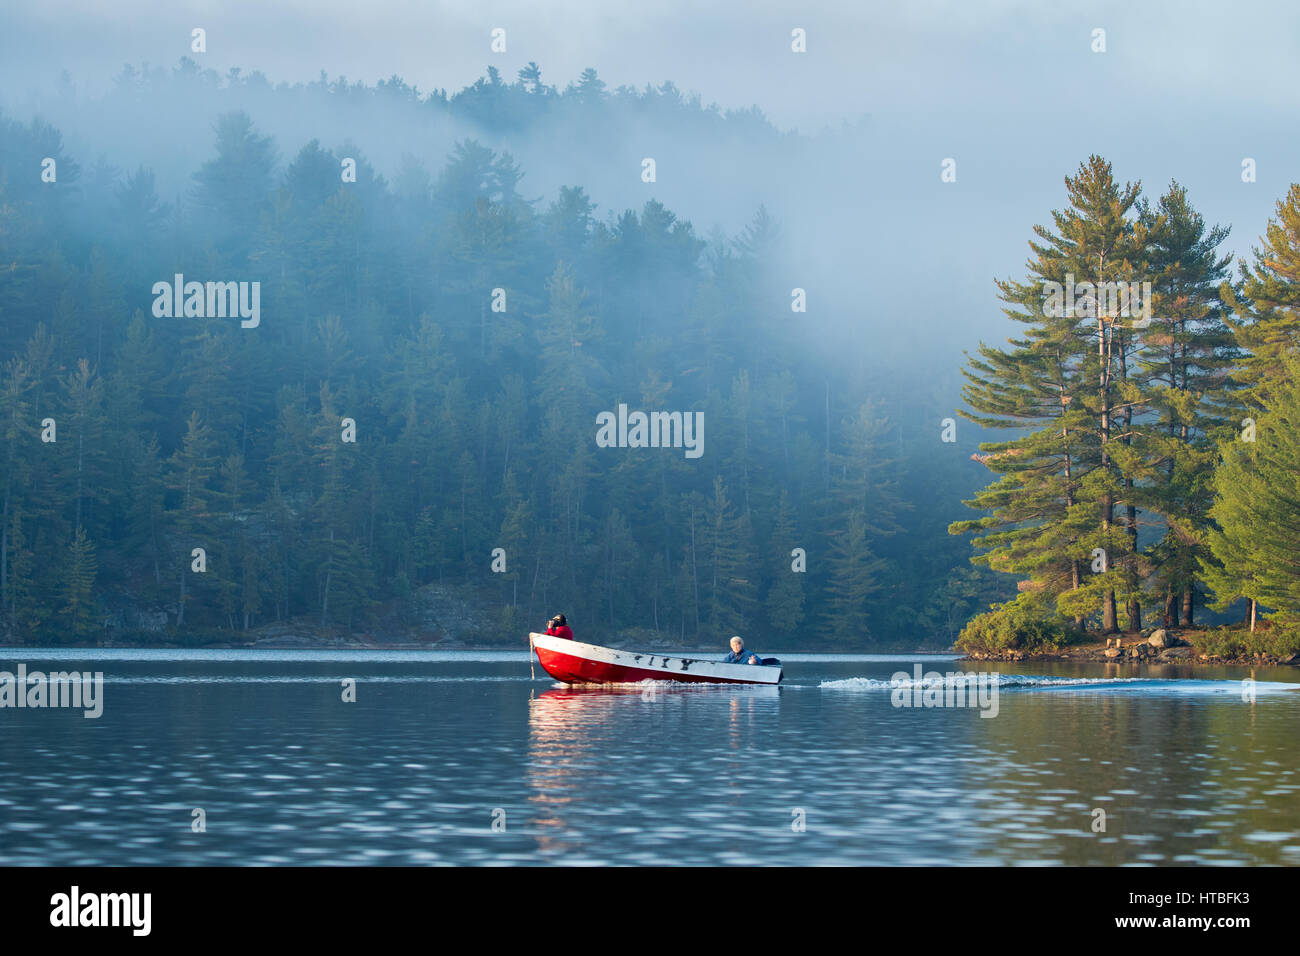 A boat on Charlton Lake at dawn, Ontario, Canada Stock Photo